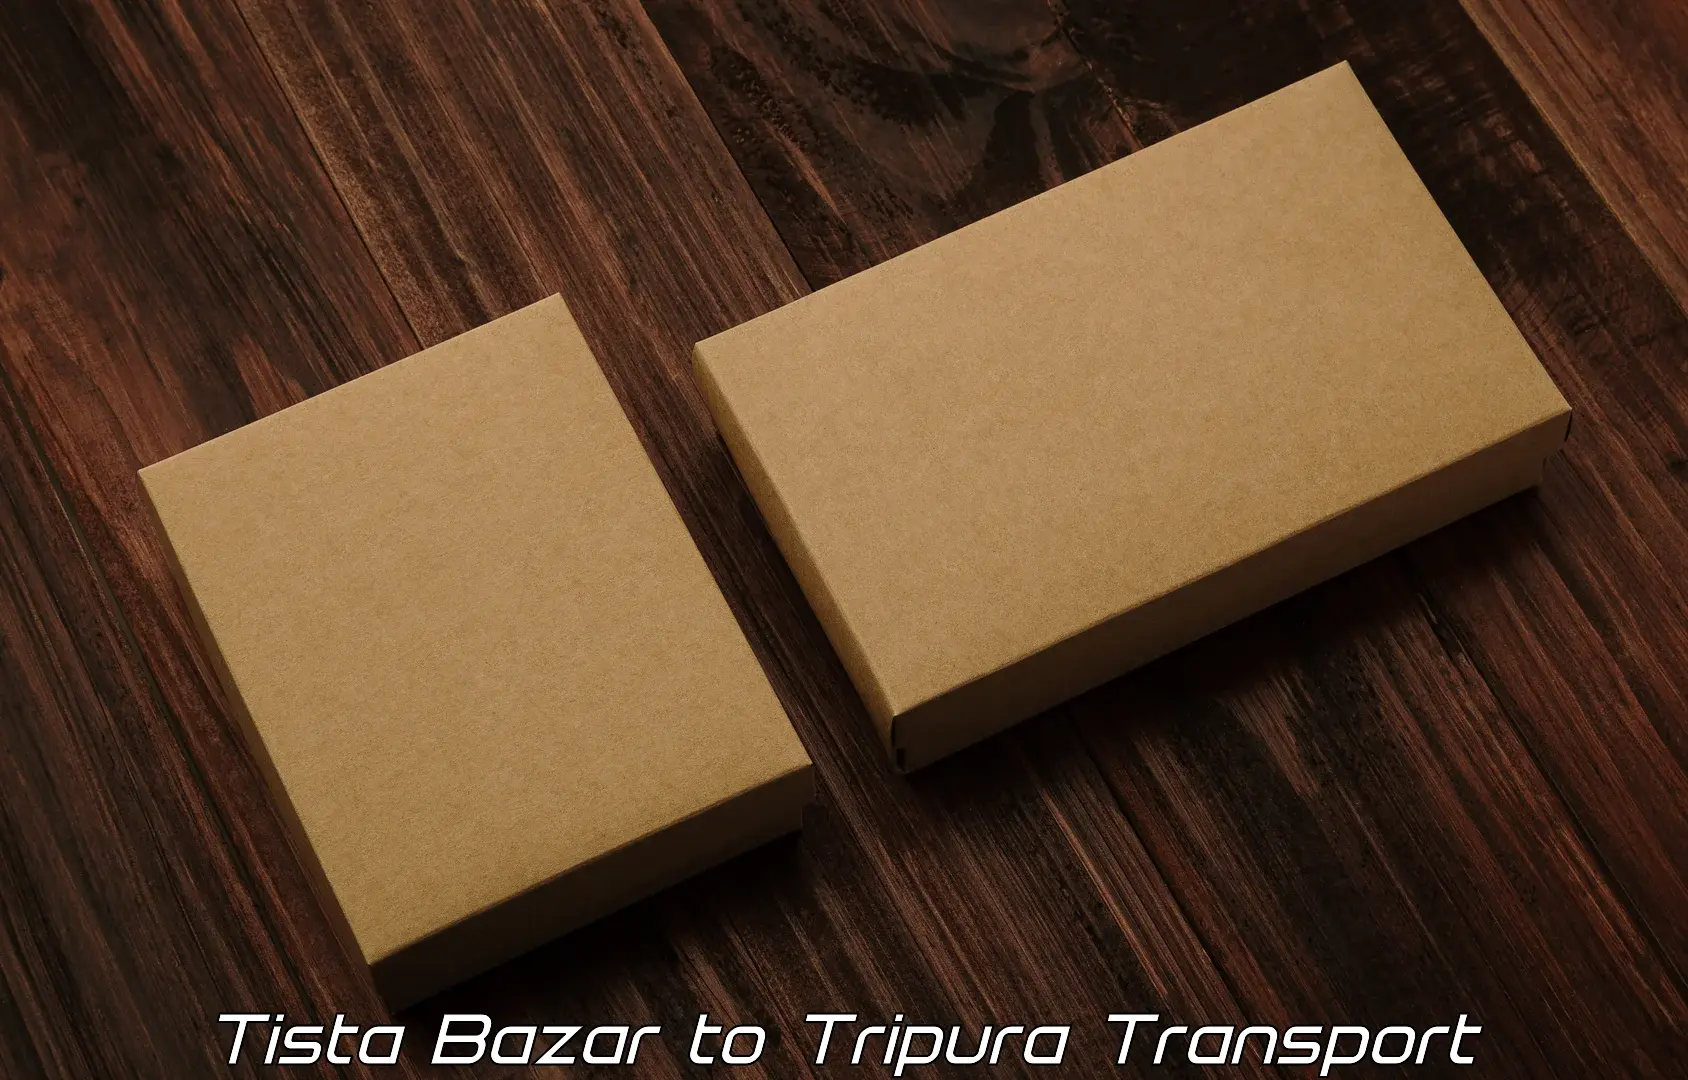 Online transport service Tista Bazar to North Tripura